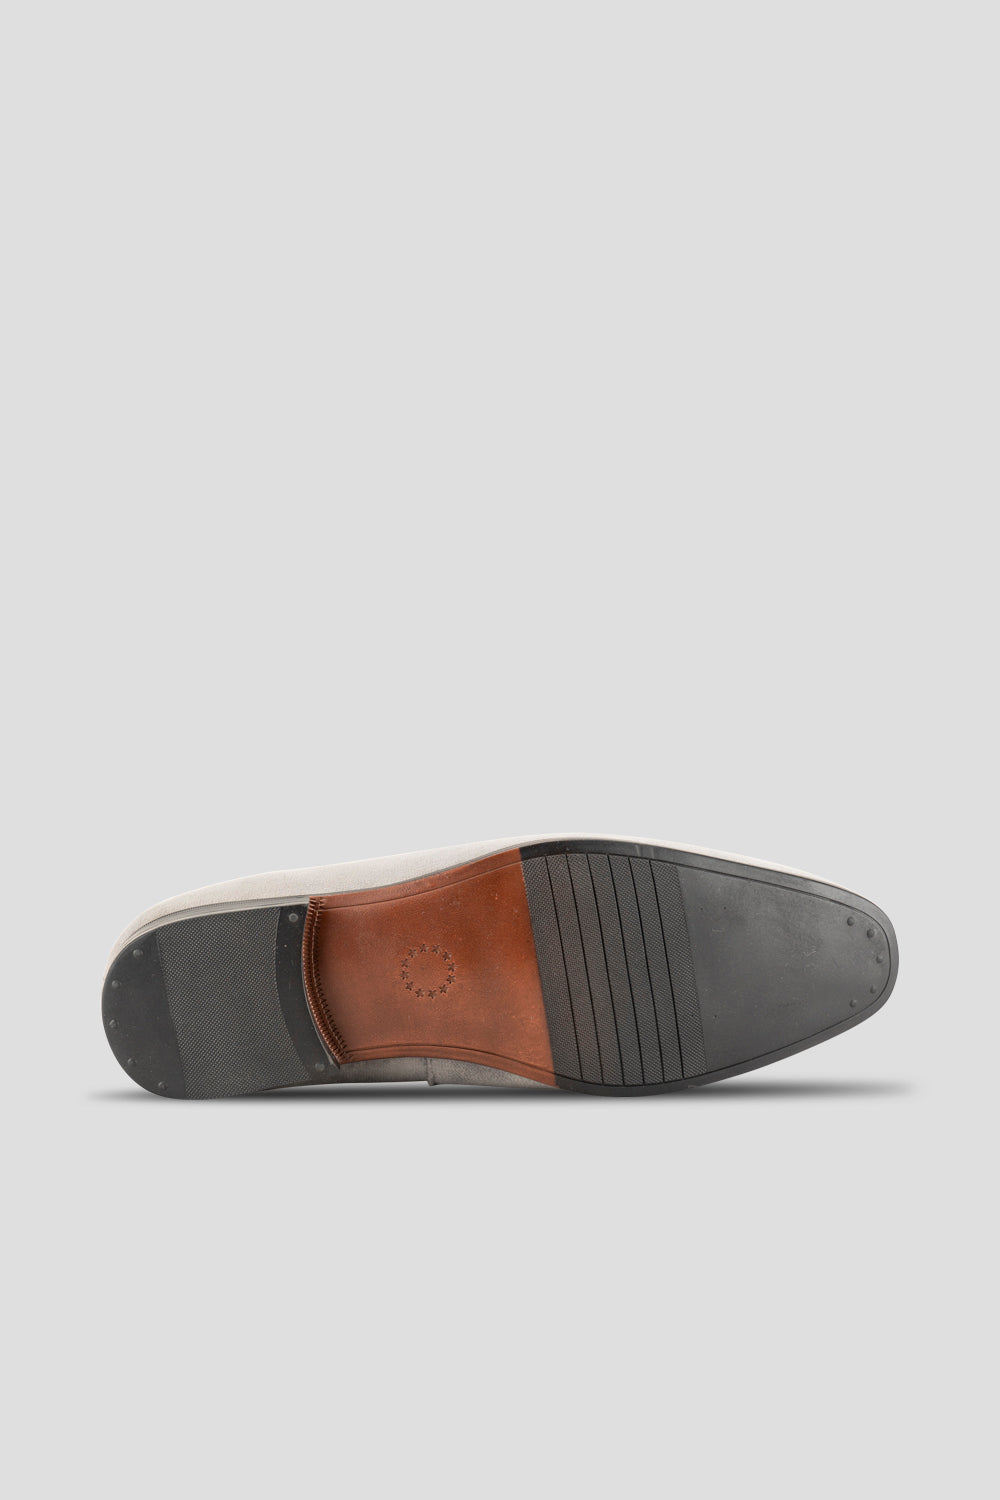 Alfie Grey velvet slippers loafer sole